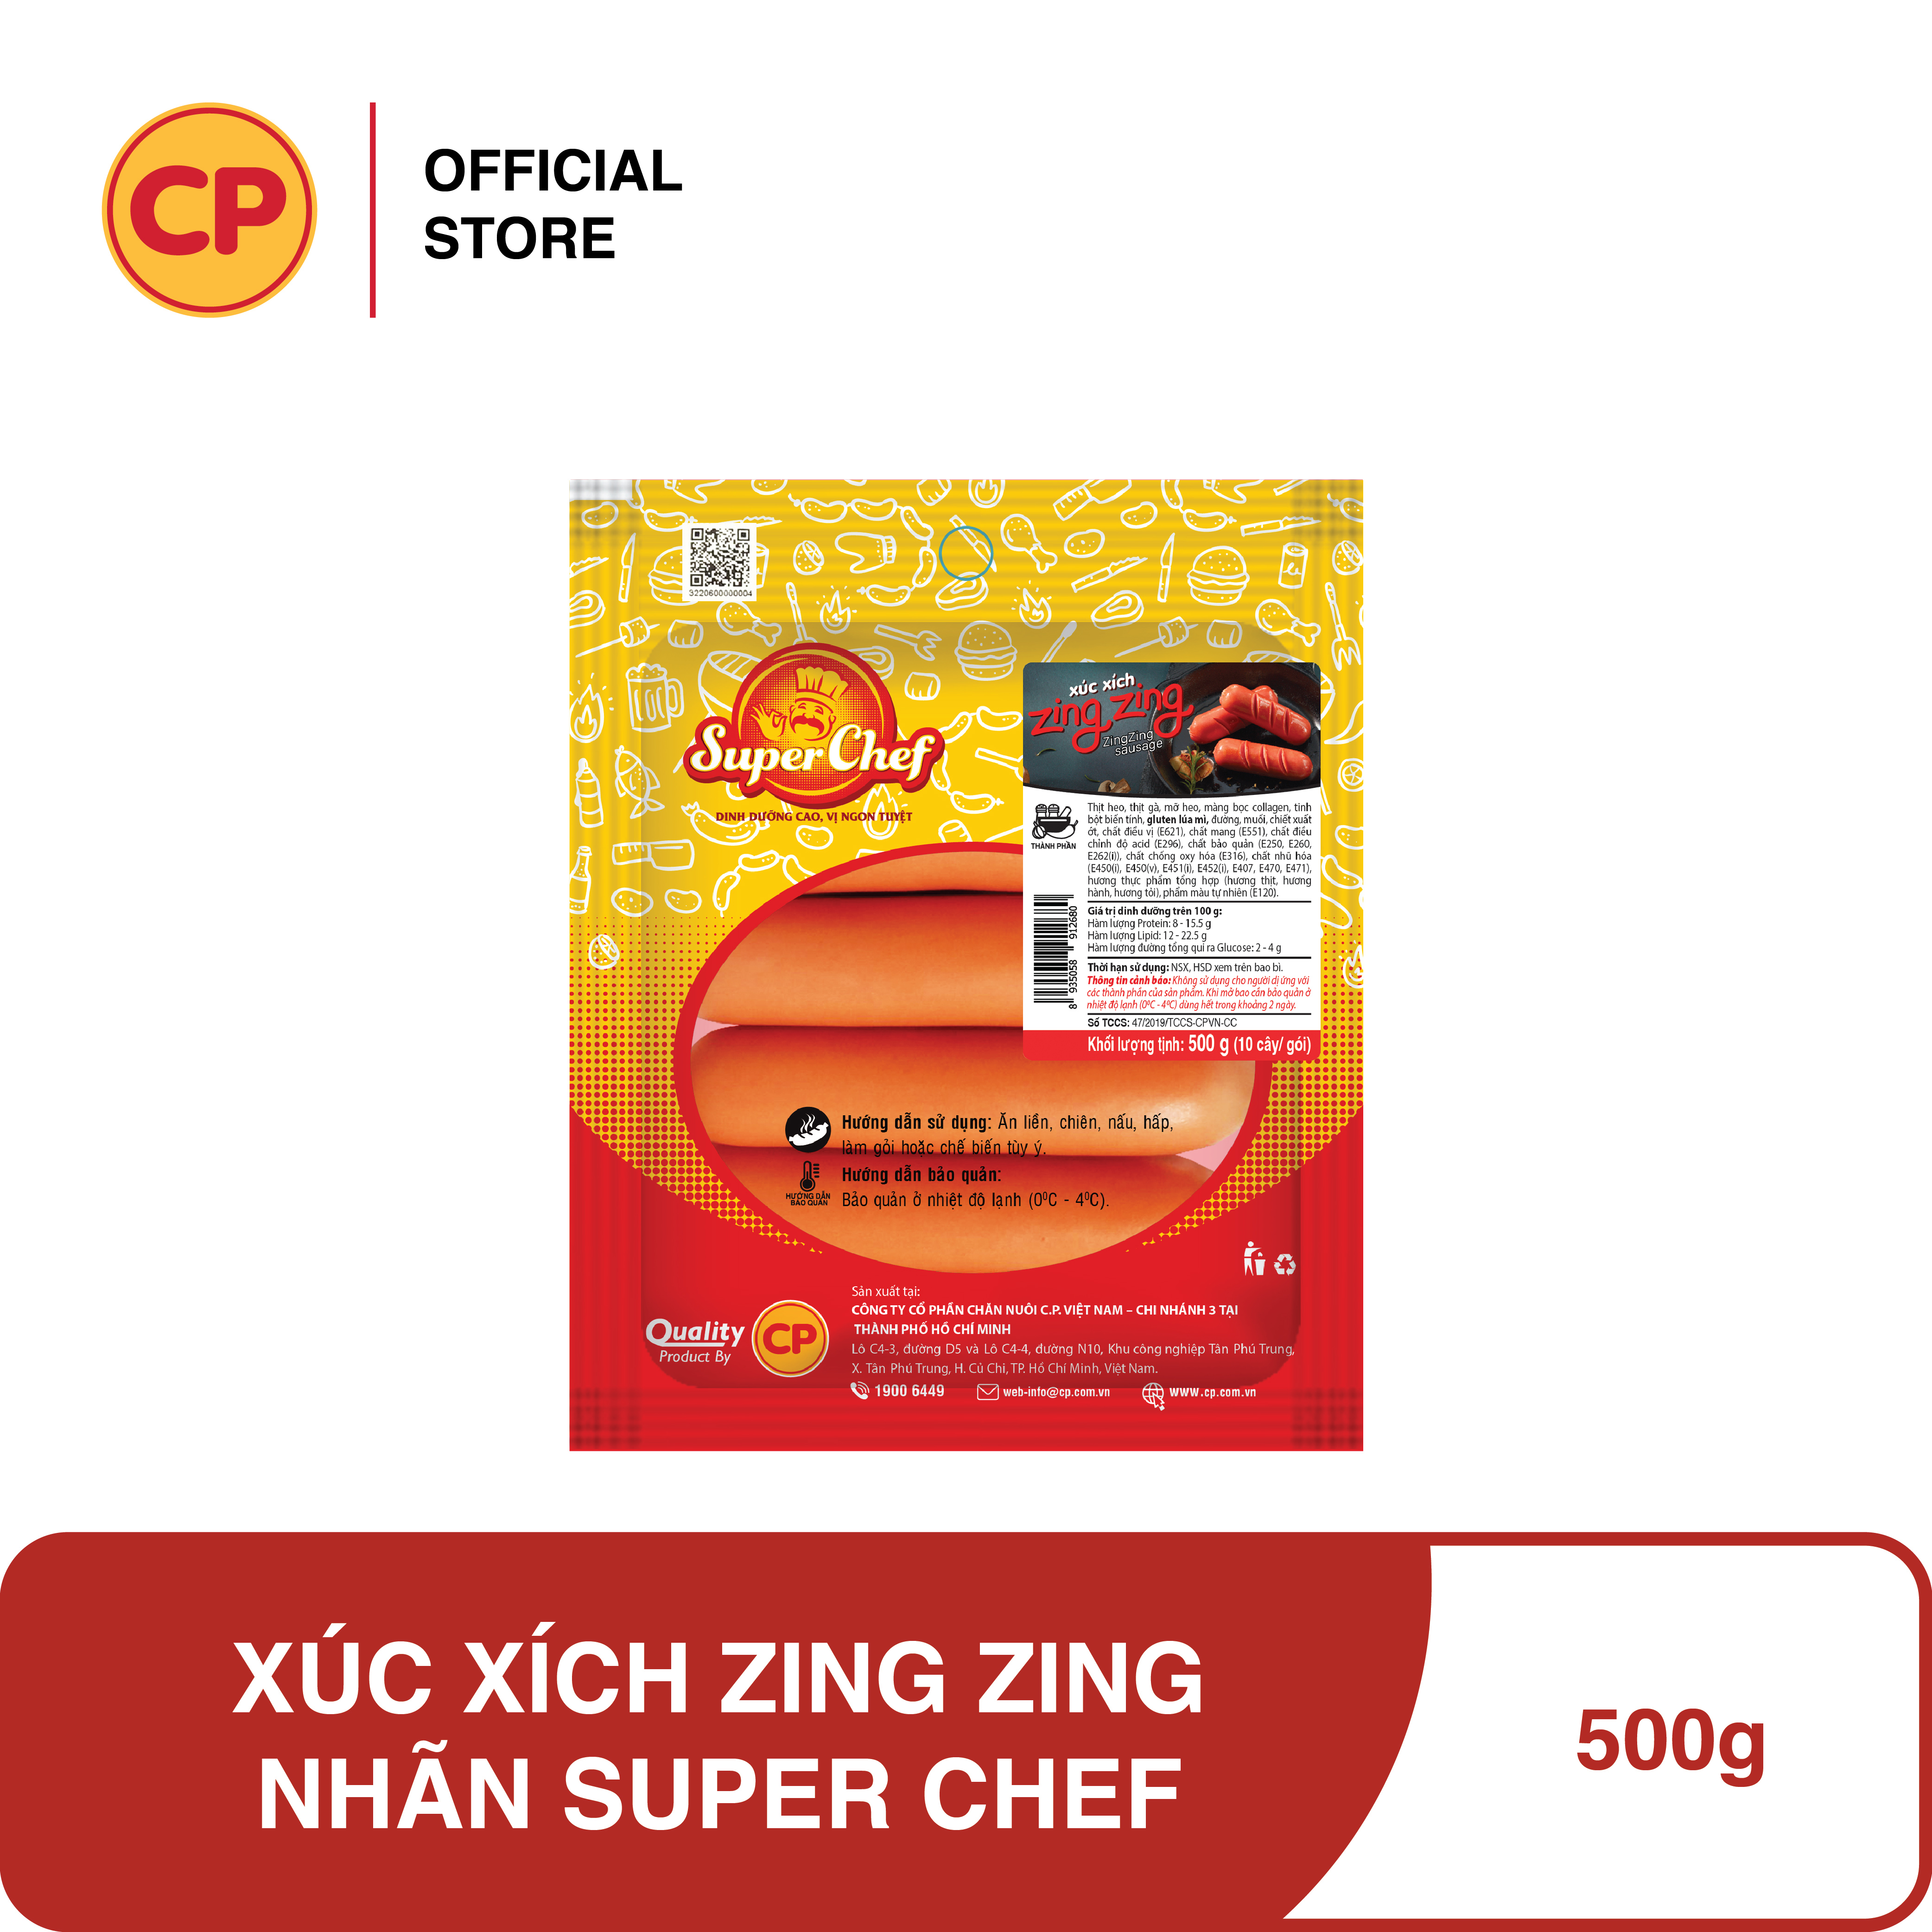 CP Xúc Xích Zing Zing Super Chef - 500g